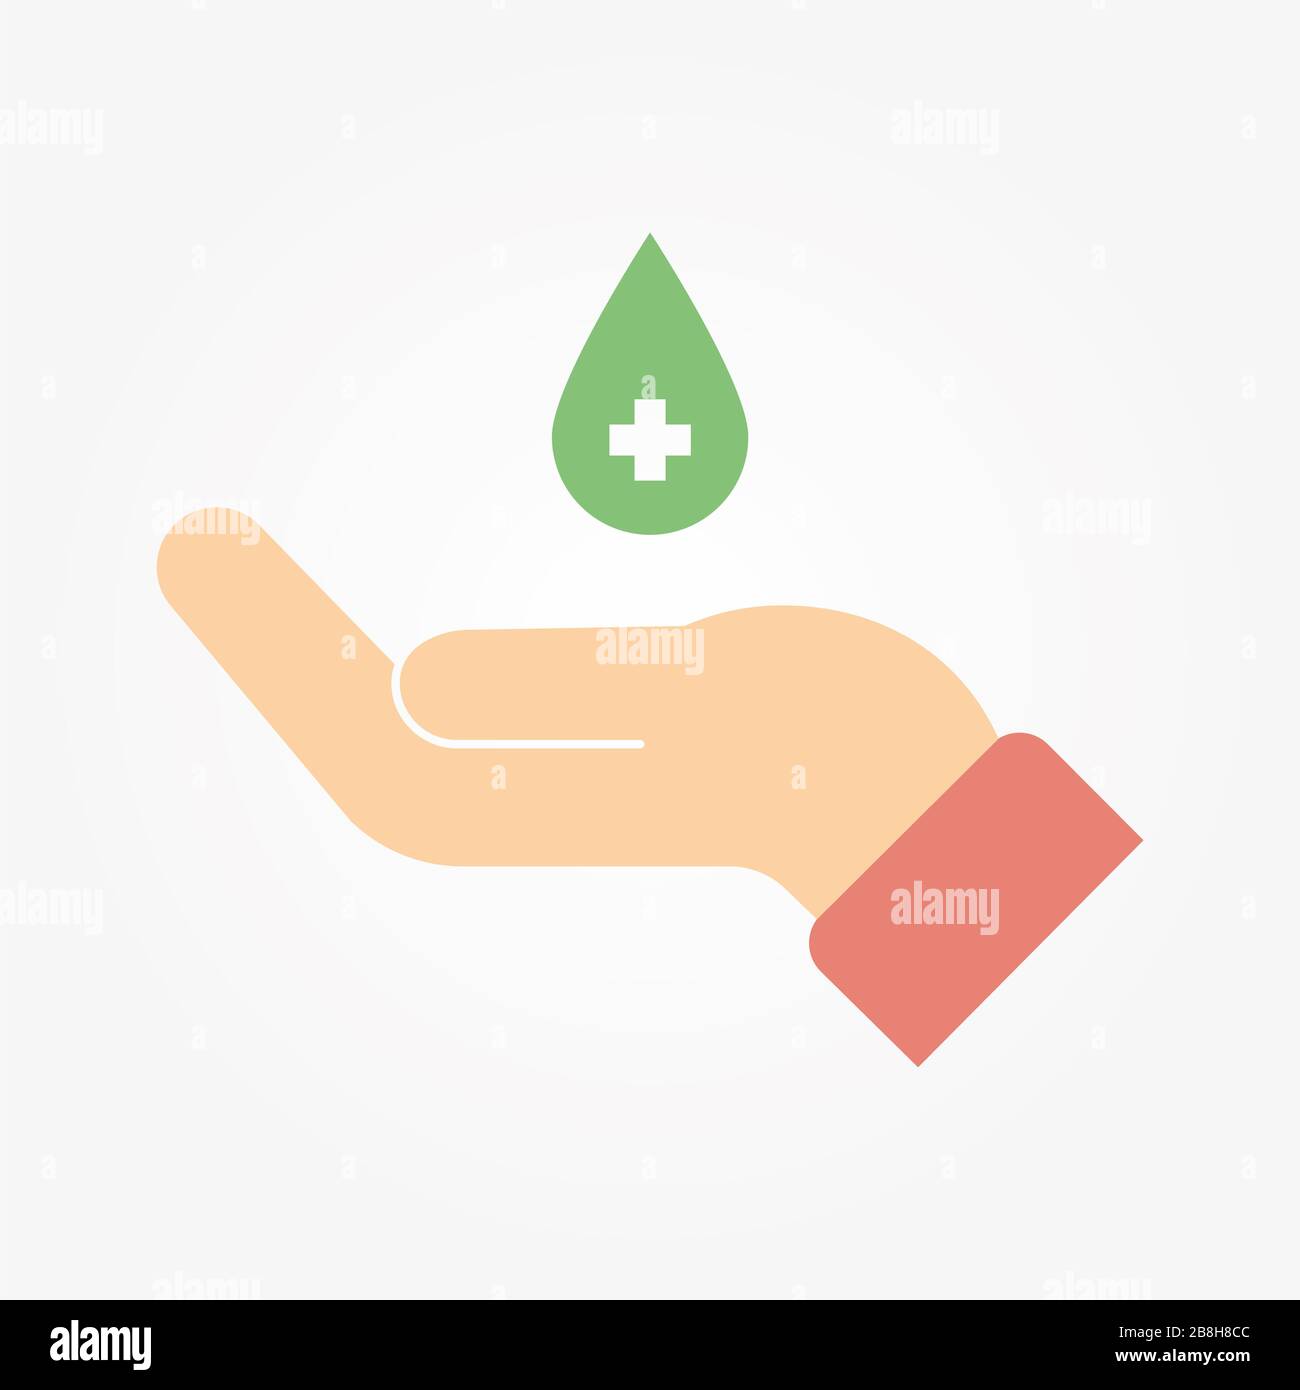 Waschen/desinfizieren/desinfizieren Sie Ihre Hände regelmäßig und gründlich, um eine gute Hygiene und Gesundheit zu gewährleisten und eine Infektion mit einem Virus zu vermeiden. Stockfoto